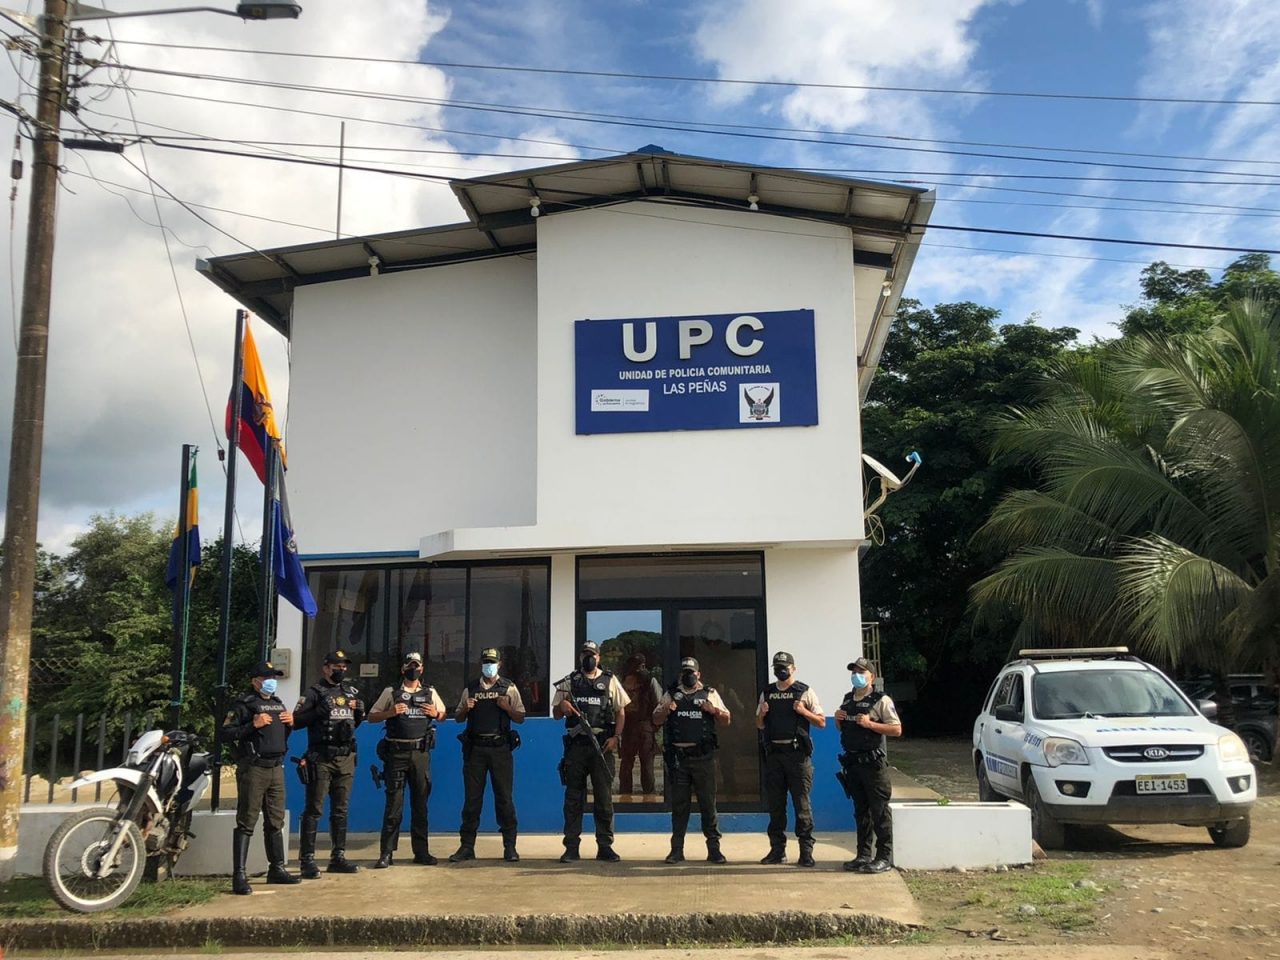 CAMBIO. La unidad de policía comunitaria (UPC) de Las Peñas mejorada entre los uniformados y la comunidad.